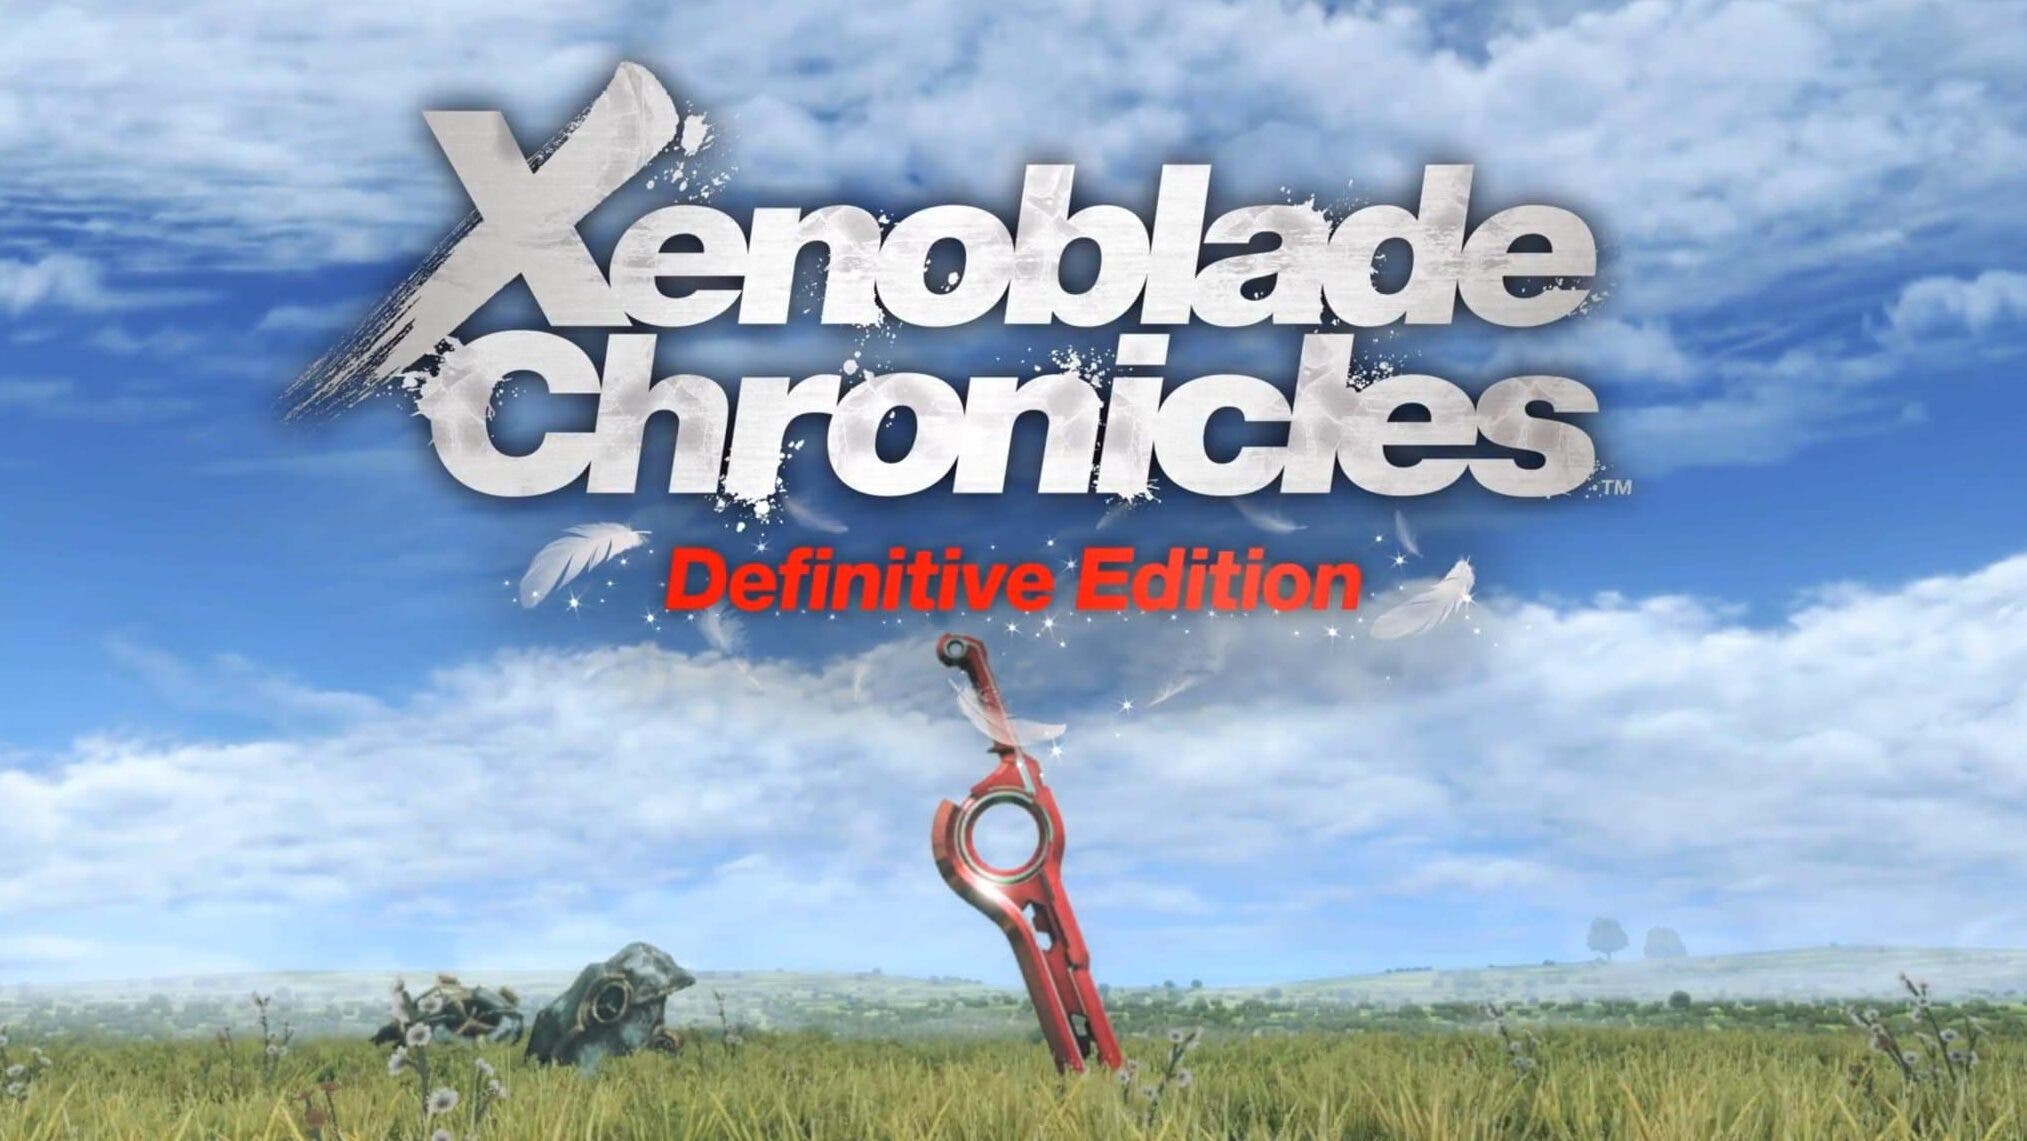 El escenario de Futuros Conectados de Xenoblade Chronicles: Definitive Edition tendrá un nuevo sistema de batalla